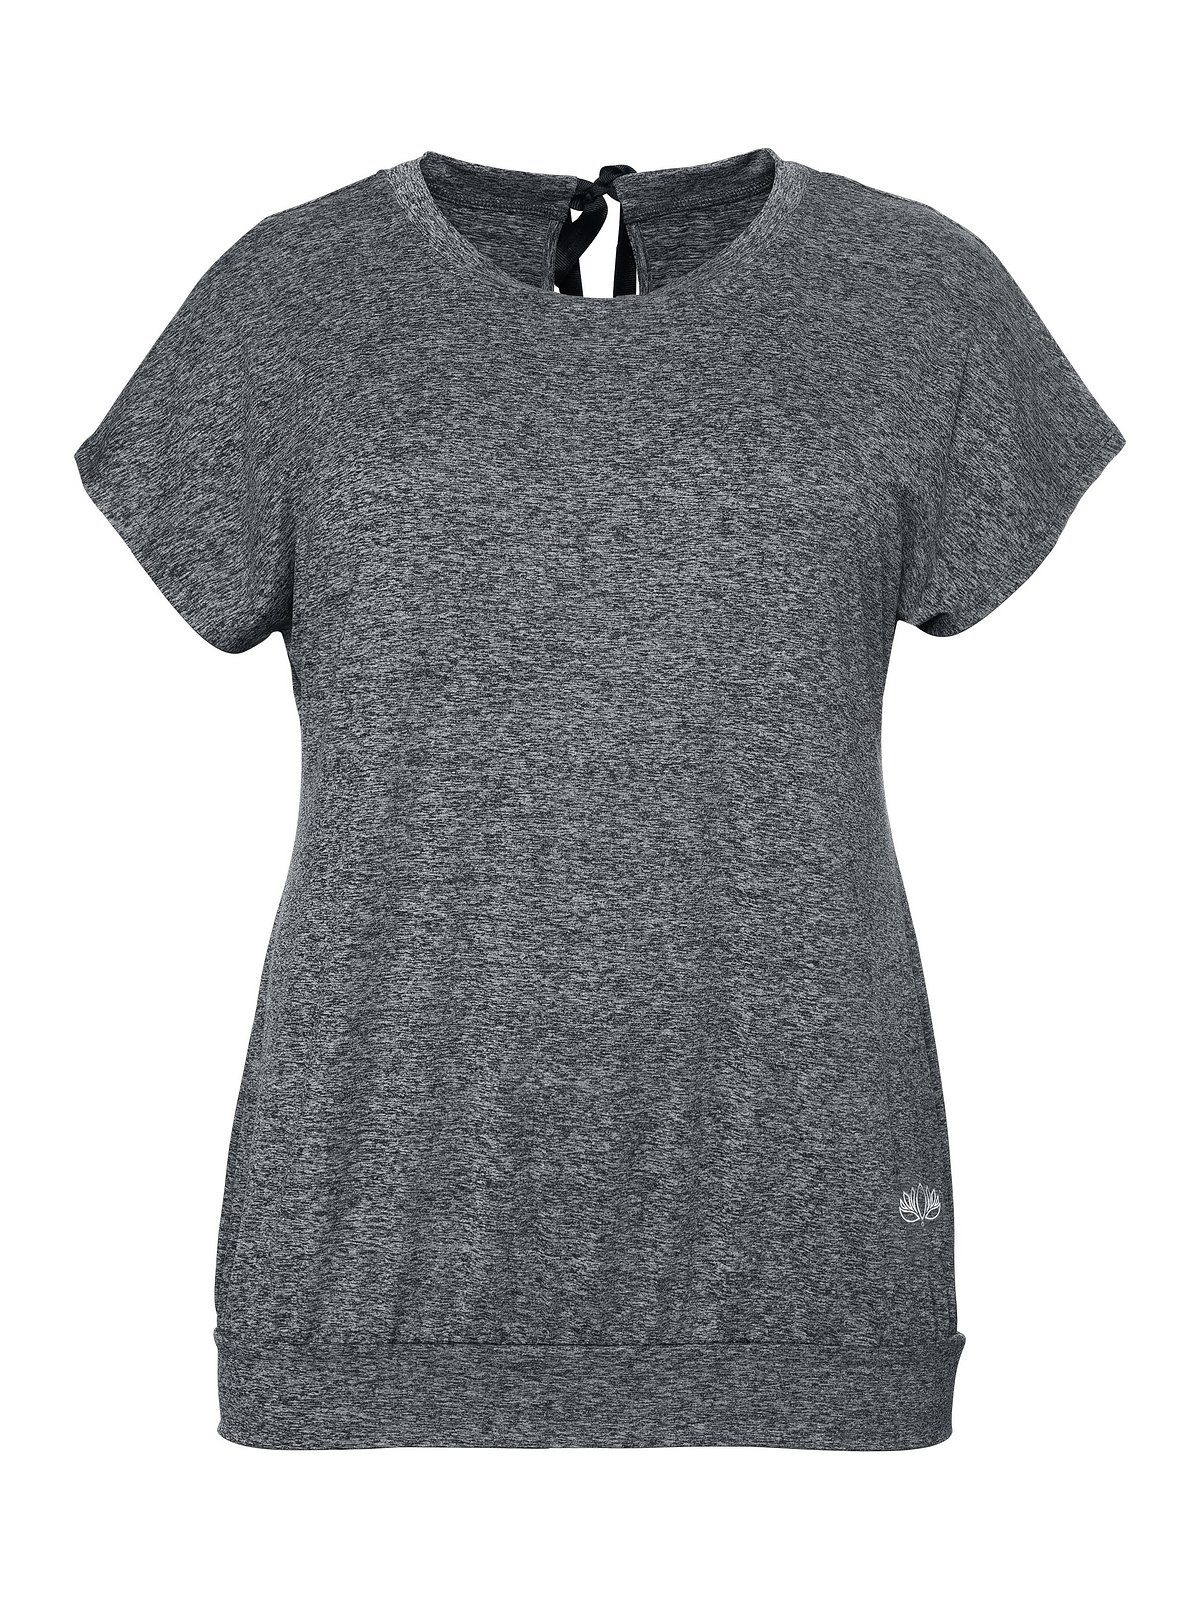 Sheego T-Shirt grau meliert Größen Große Funktionsmaterial aus